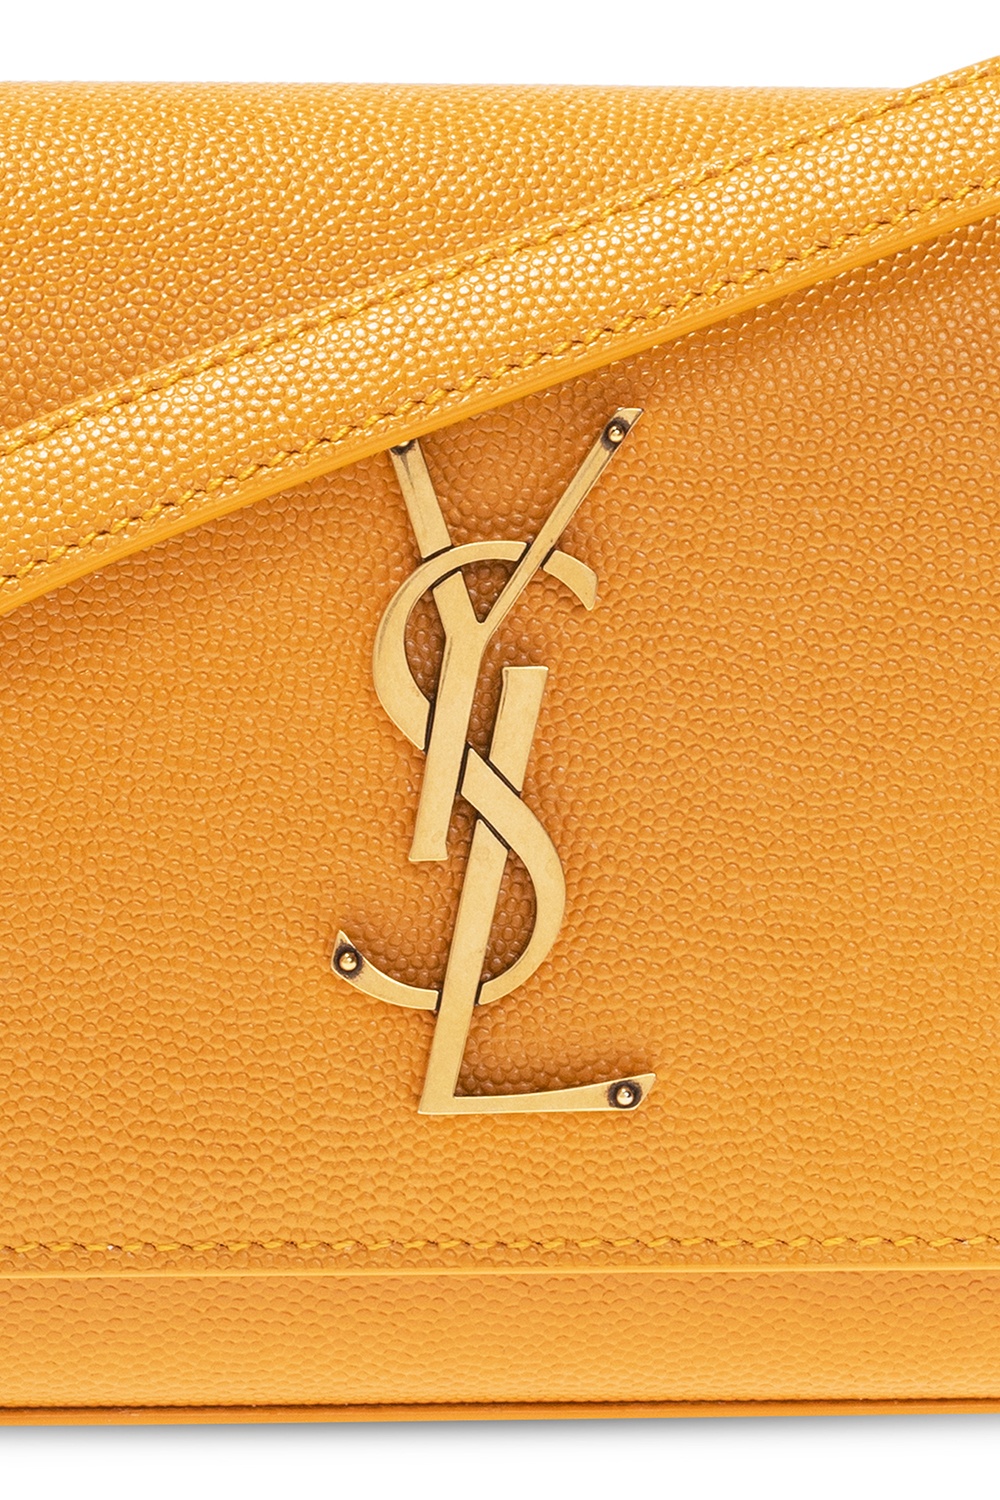 Kate leather belt bag  #leatherbeltbag #beltbag #accessories #ysl